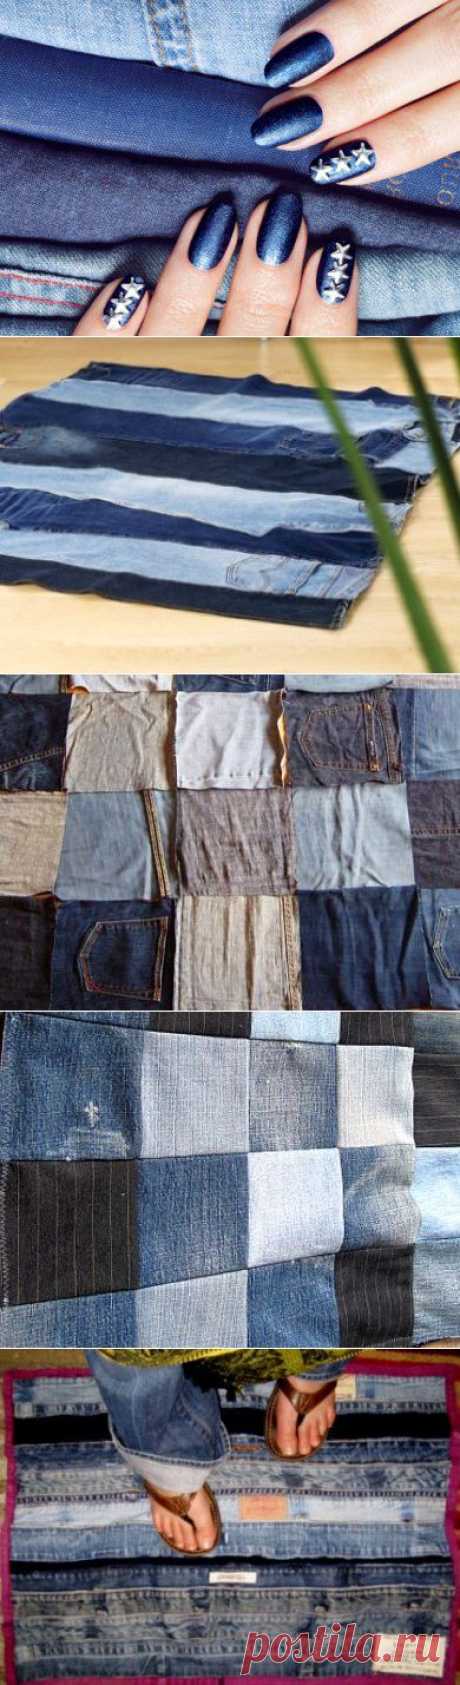 Коврик из старых джинсов своими руками | Самошвейка - сайт для любителей шитья и рукоделия